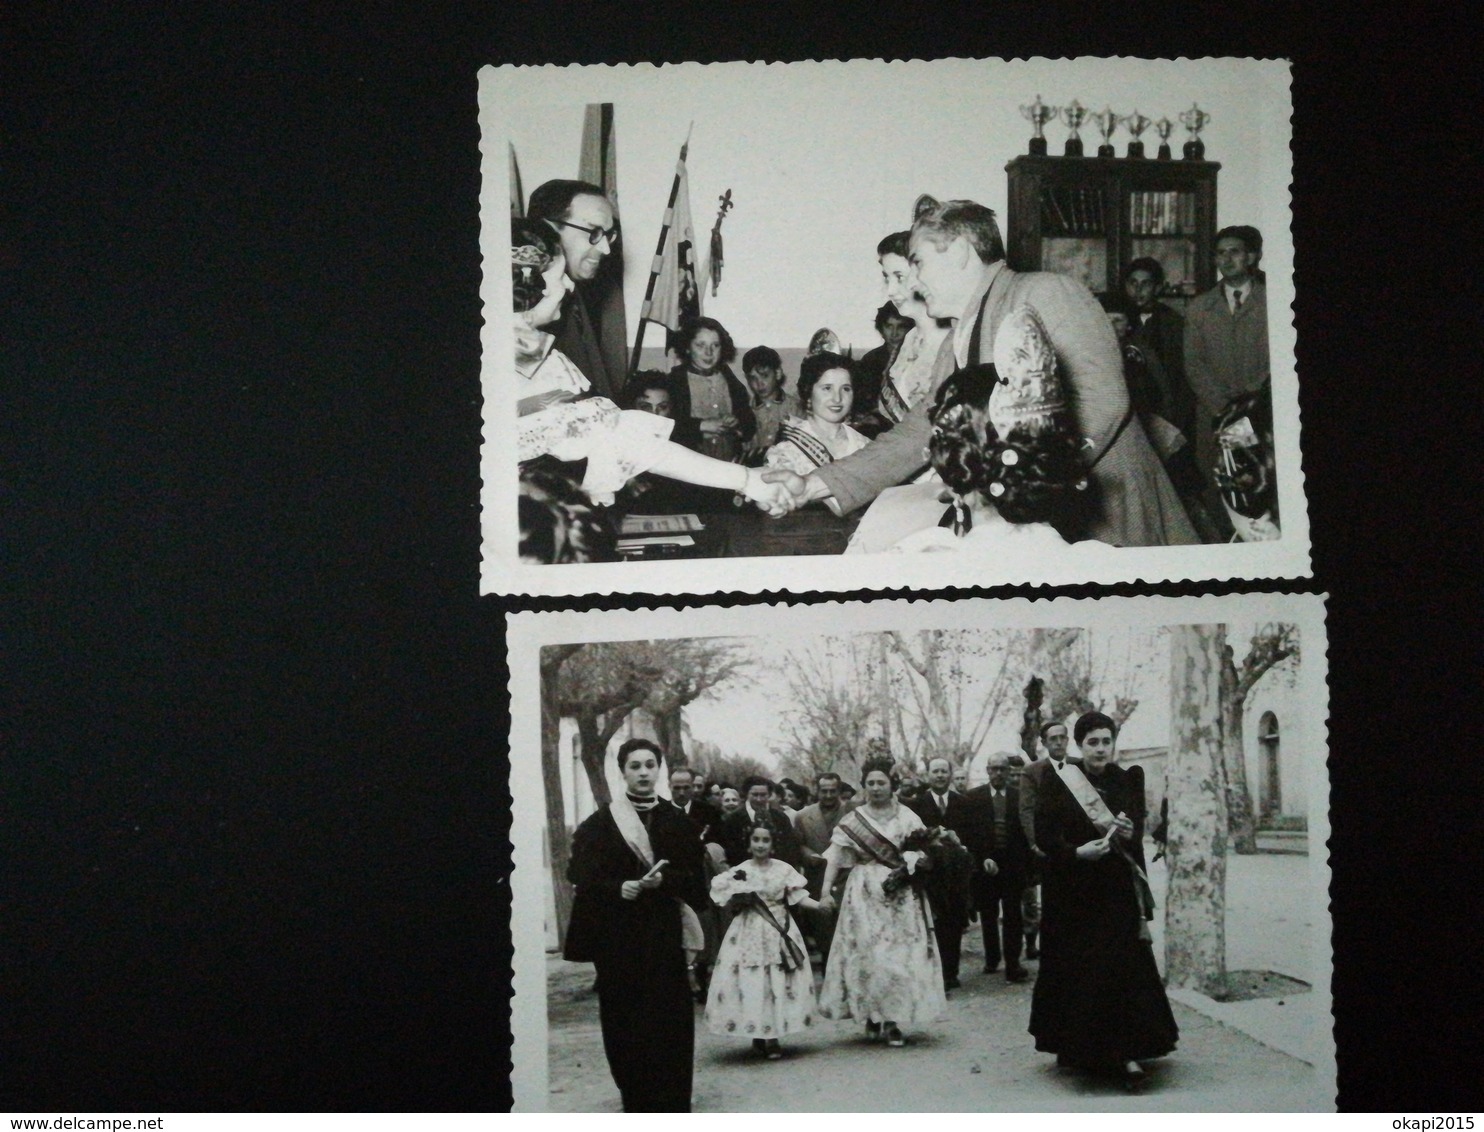 120 PHOTOS ORIGINALES NOIR-BLANC MAJORITAIREMNT CENTRÉES SUR LES PERSONNES DIVERS LIEUX BELGIQUE FRANCE 1930 À 1960.